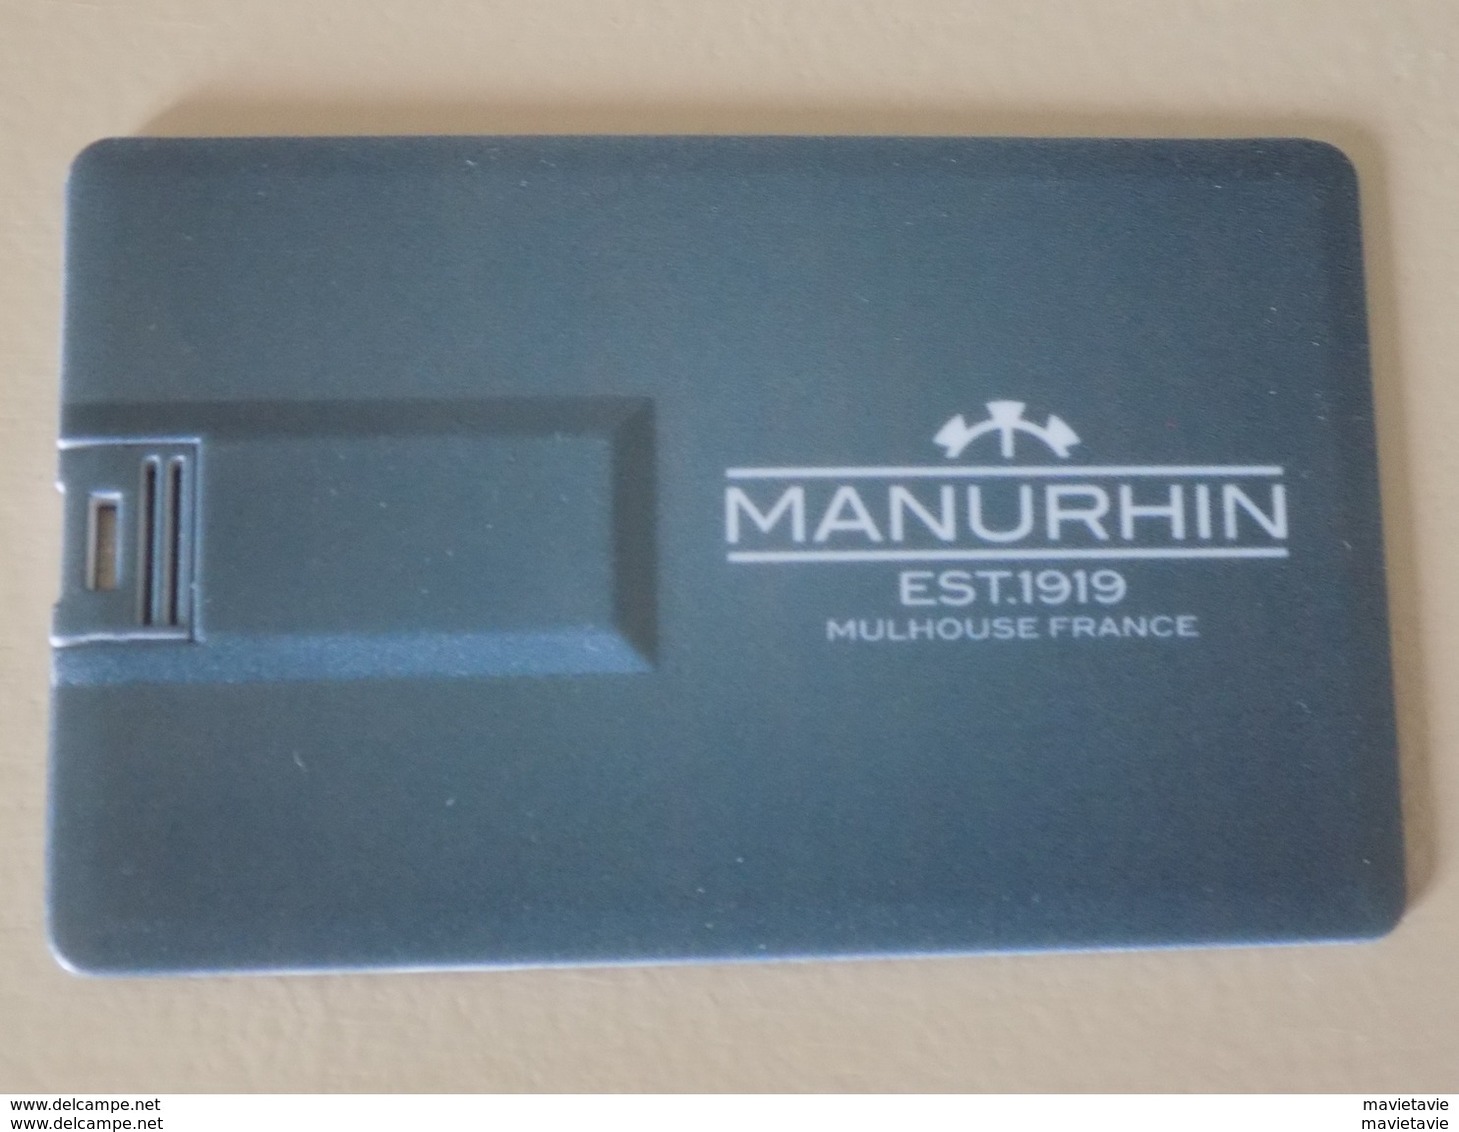 Clé USB publicitaire Manurhin